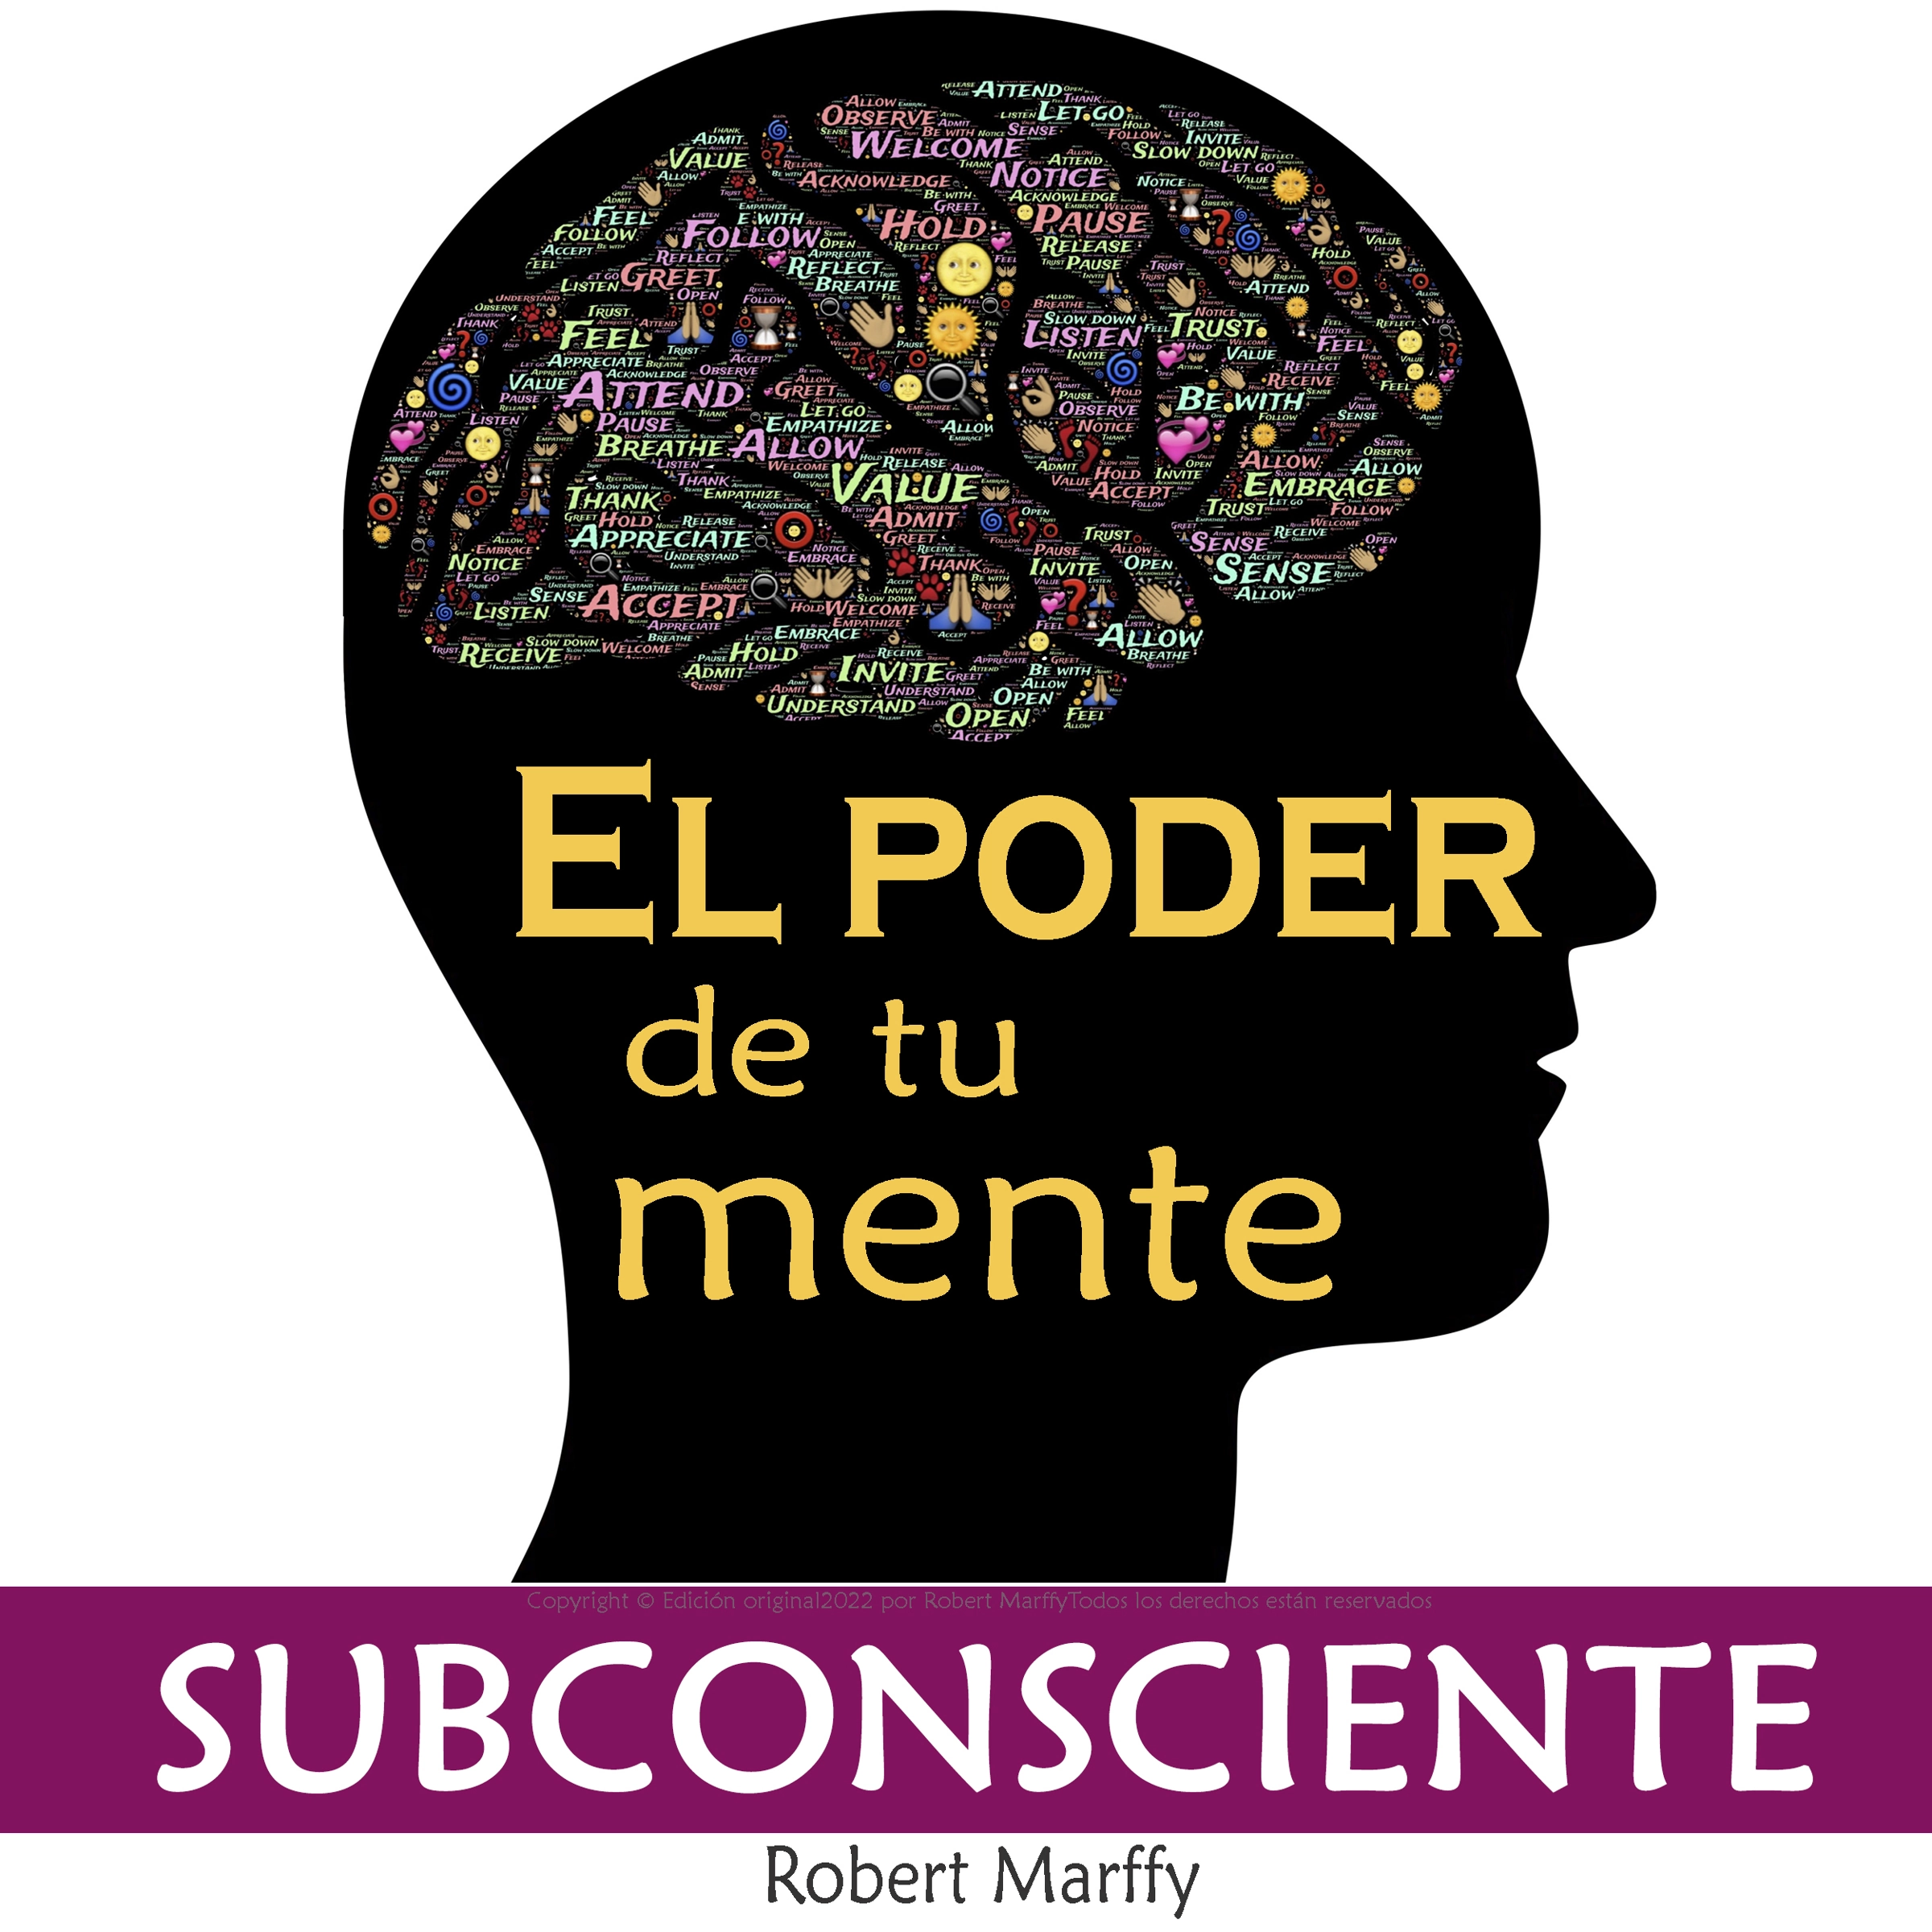 El Poder de la Mente Subconsciente by Robert Marffy Audiobook